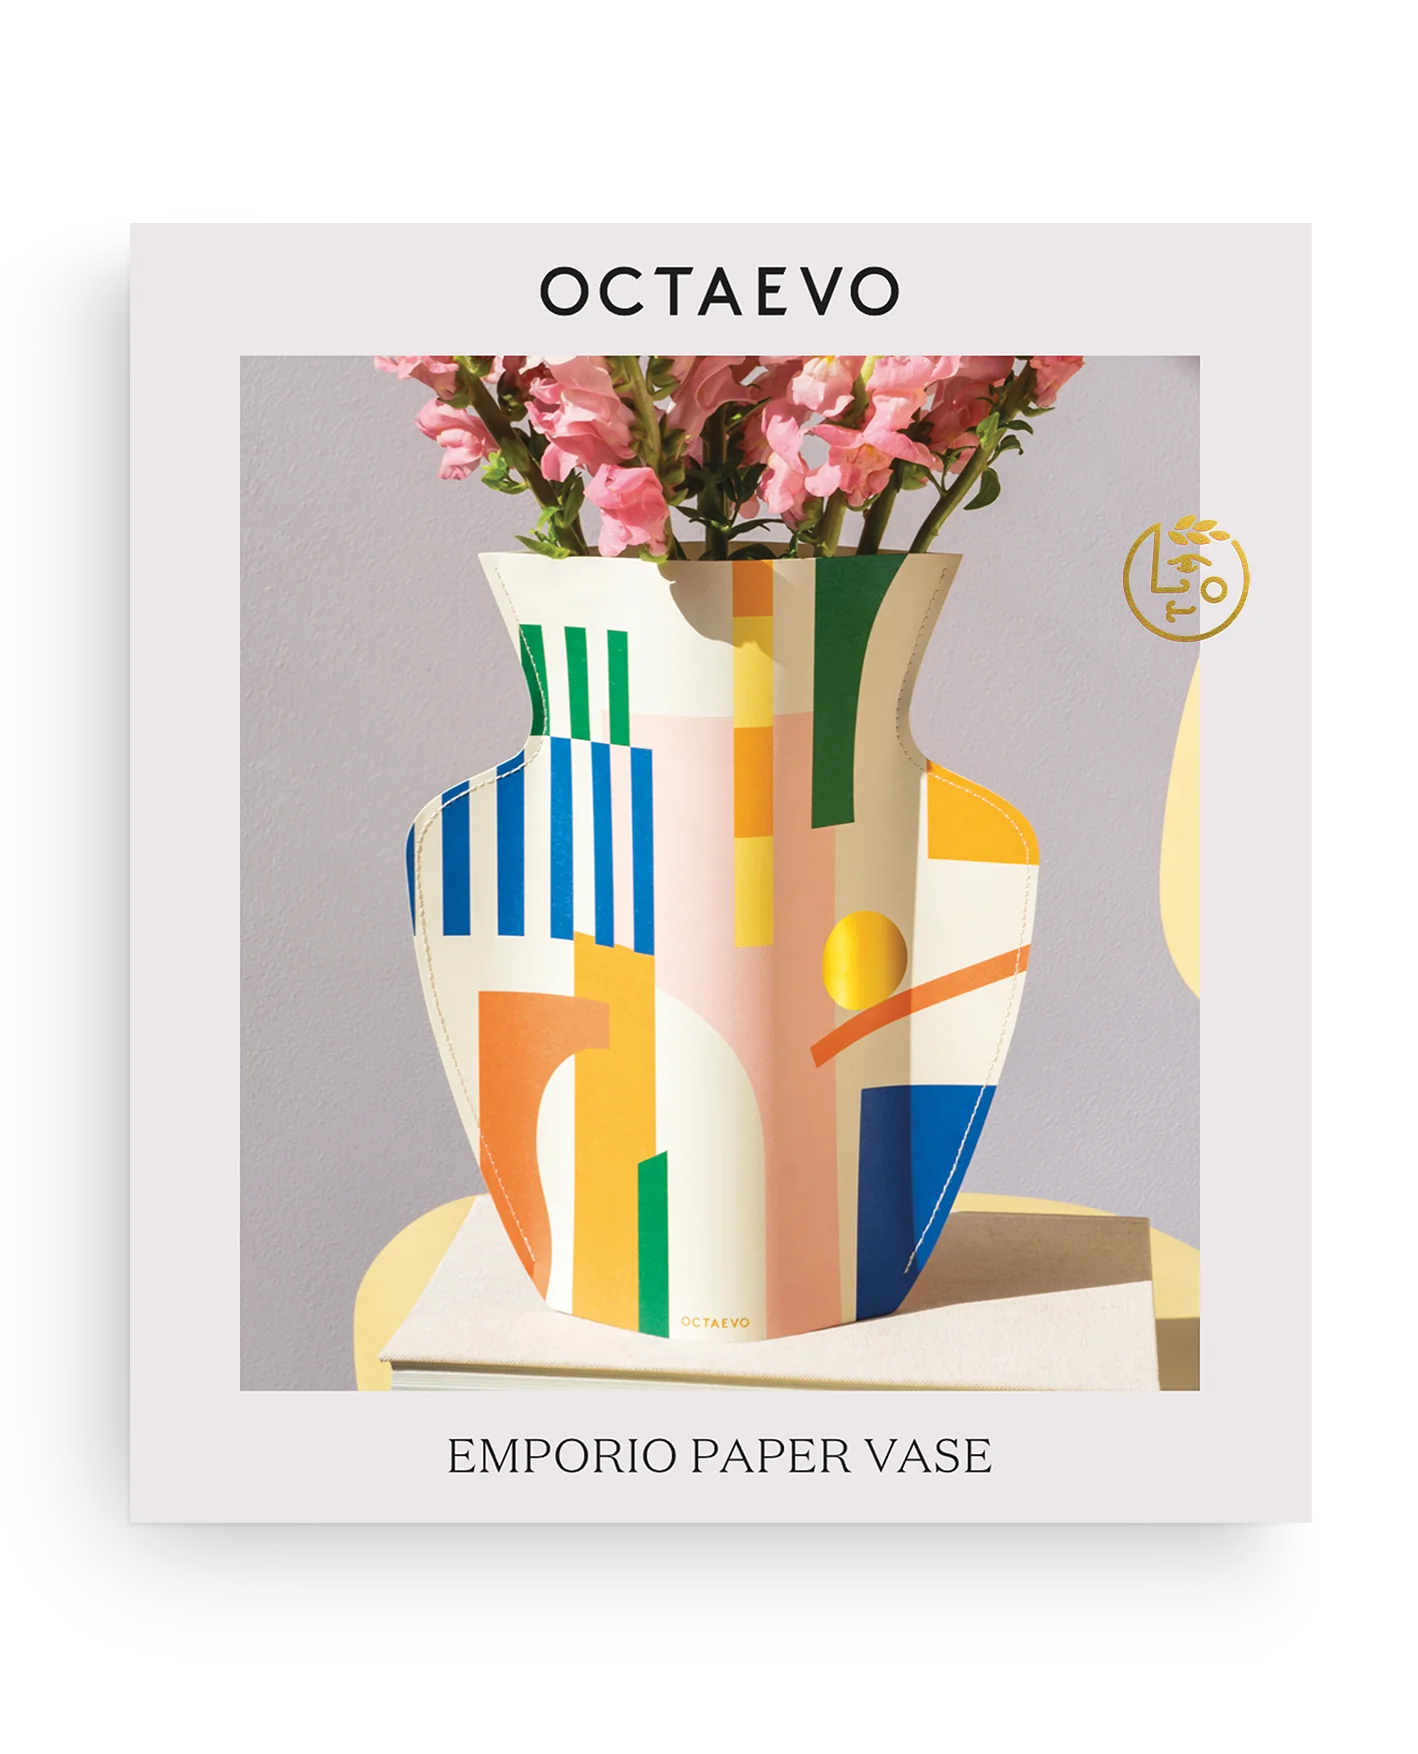 OCTAEVO – Emporio paper vase